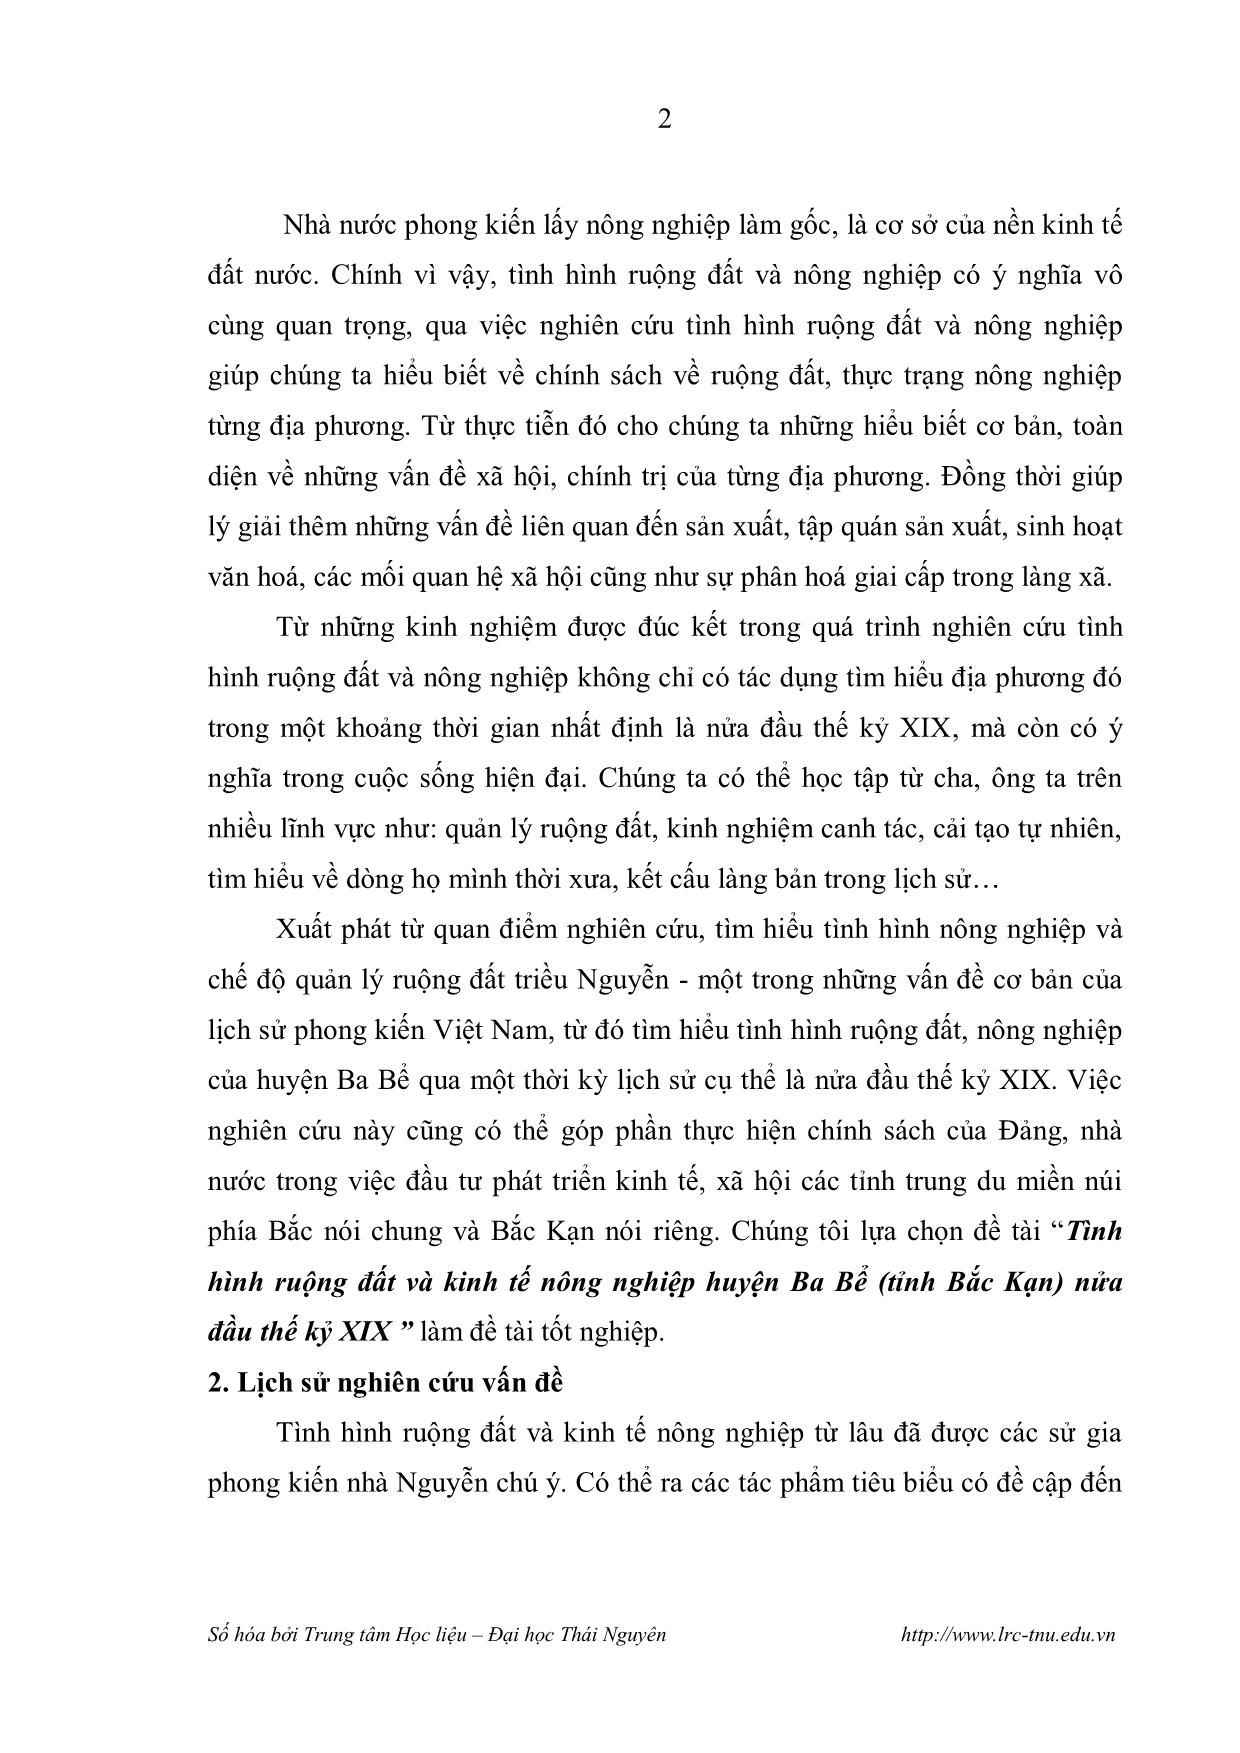 Luận văn Tình hình ruộng đất và kinh tế nông nghiệp huyện Ba Bể nửa đầu thế kỷ XIX trang 5